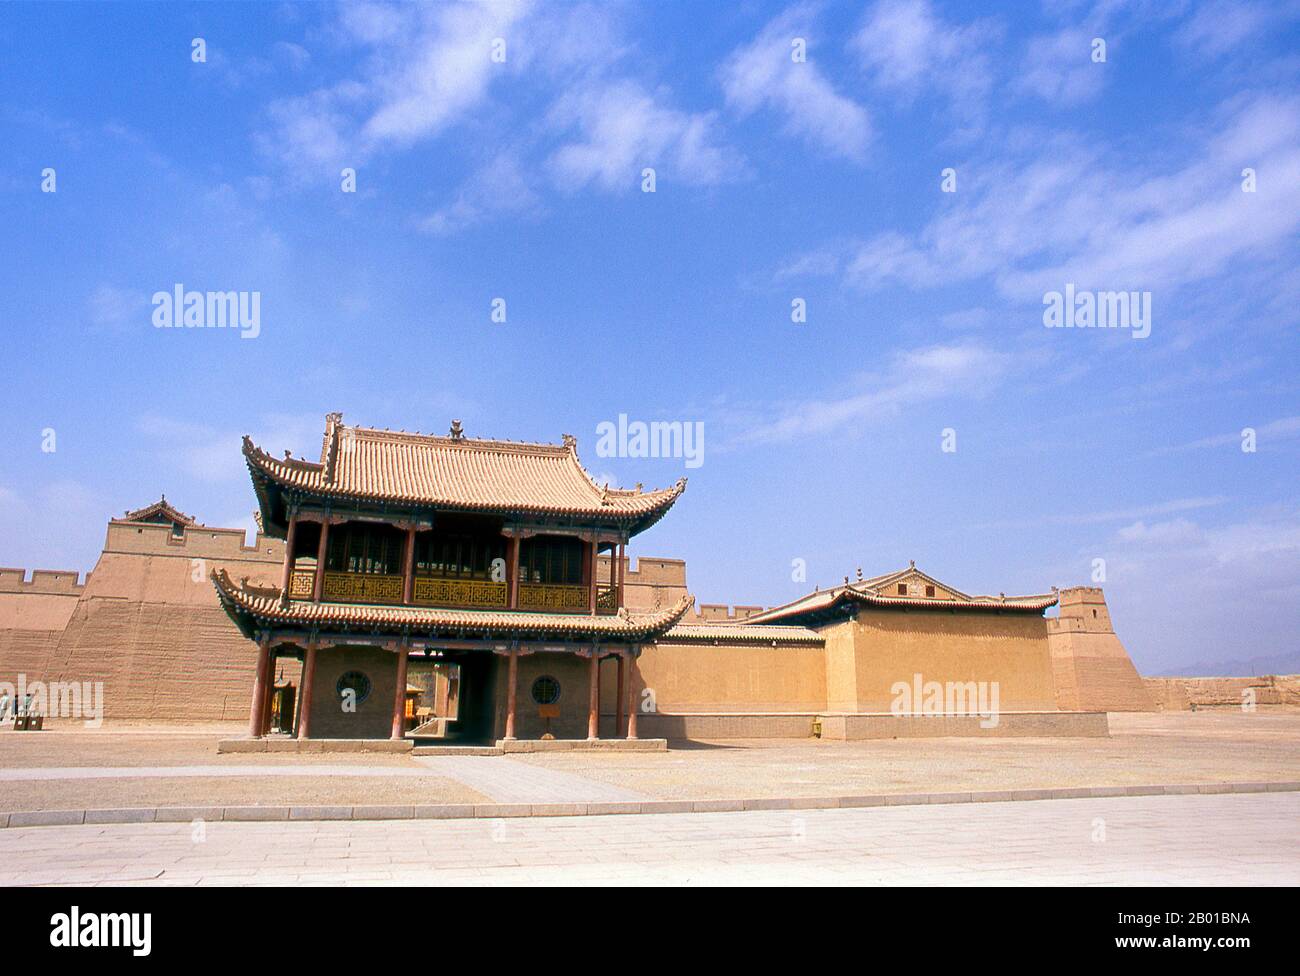 Cina: Wenchang Hall, Jiayuguan Fort, Jiayuguan, Gansu. Jiayuguan, il “primo e più grande passo sotto il cielo”, fu completato nel 1372 su ordine di Zhu Yuanzhang, il primo imperatore Ming (1368-98), per segnare la fine della Grande Muraglia Ming. Era anche il limite stesso della civiltà cinese, e gli inizi delle terre “barbariche” esterne. Per secoli il forte non era solo di importanza strategica per i cinesi Han, ma anche di significato culturale. Questo era l'ultimo luogo civilizzato prima delle tenebre esterne, e quelli che procedono oltre affrontarono una vita di esilio tra stranieri nomadi. Foto Stock